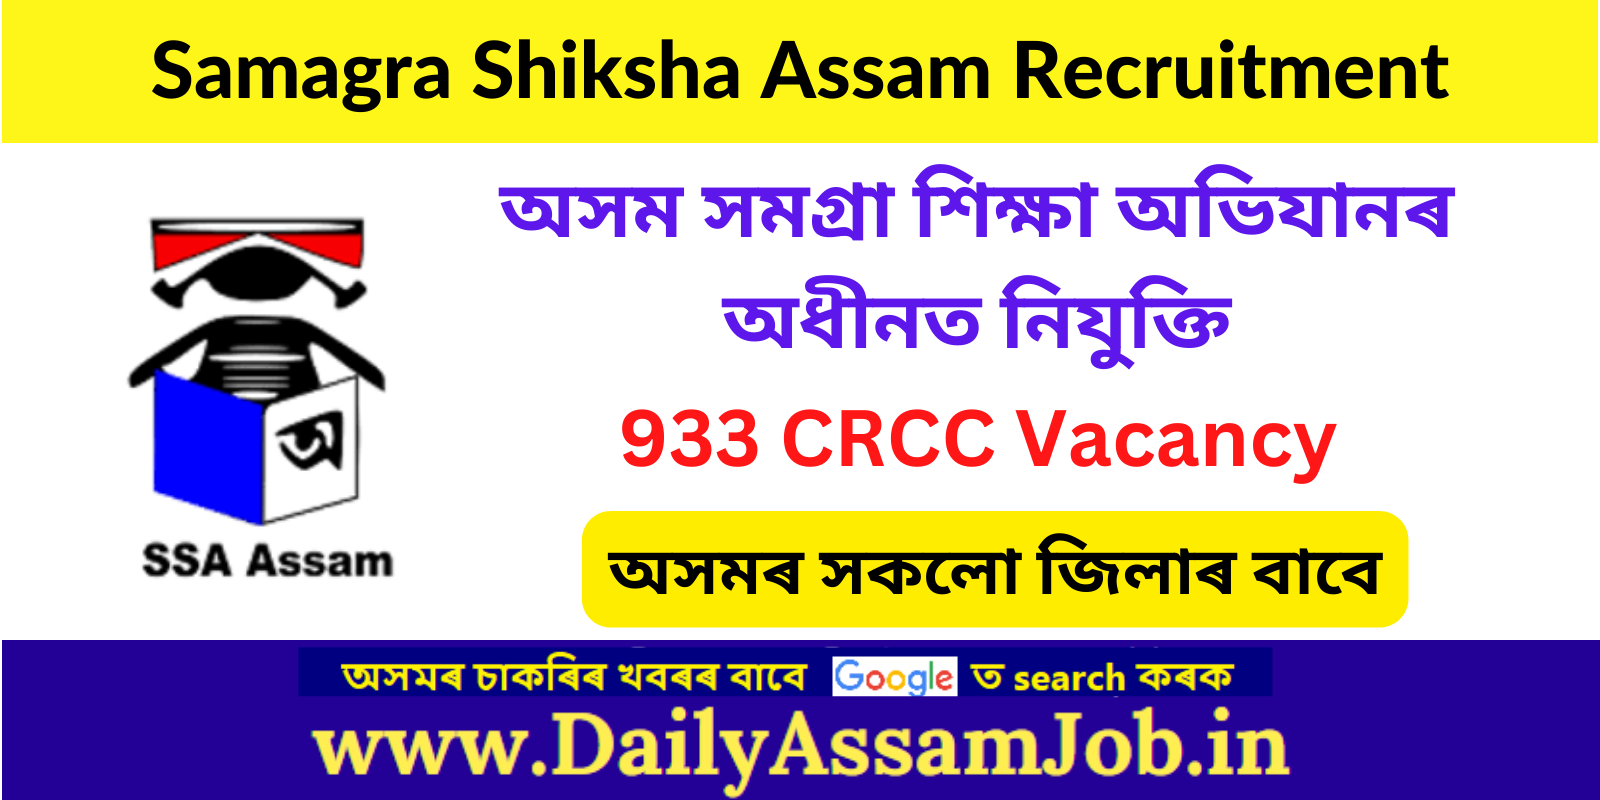 Samagra Shiksha Assam Recruitment 2023